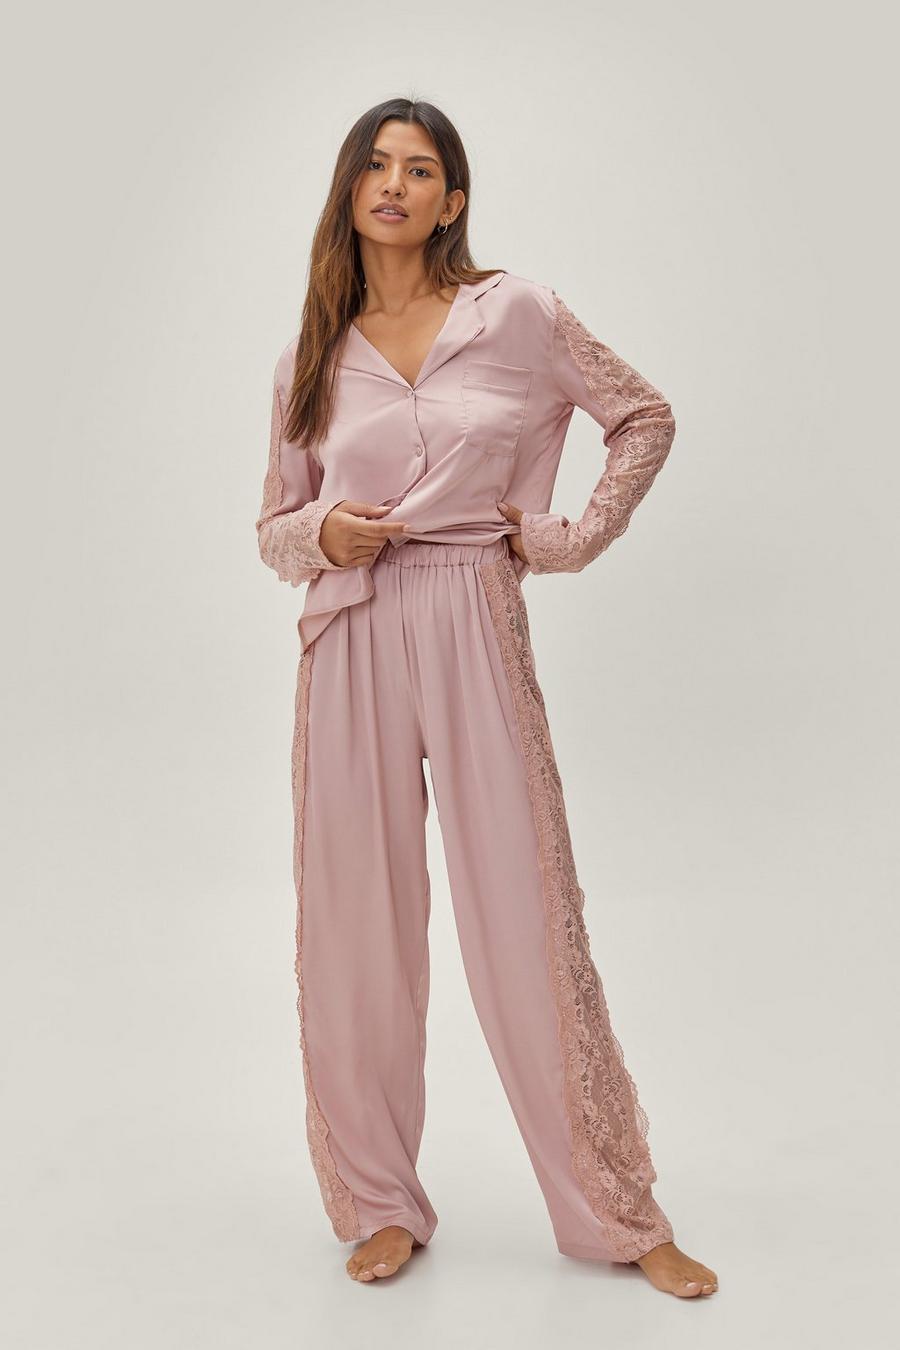 Satin Lace Trim Shirt and Pajama Pants Set